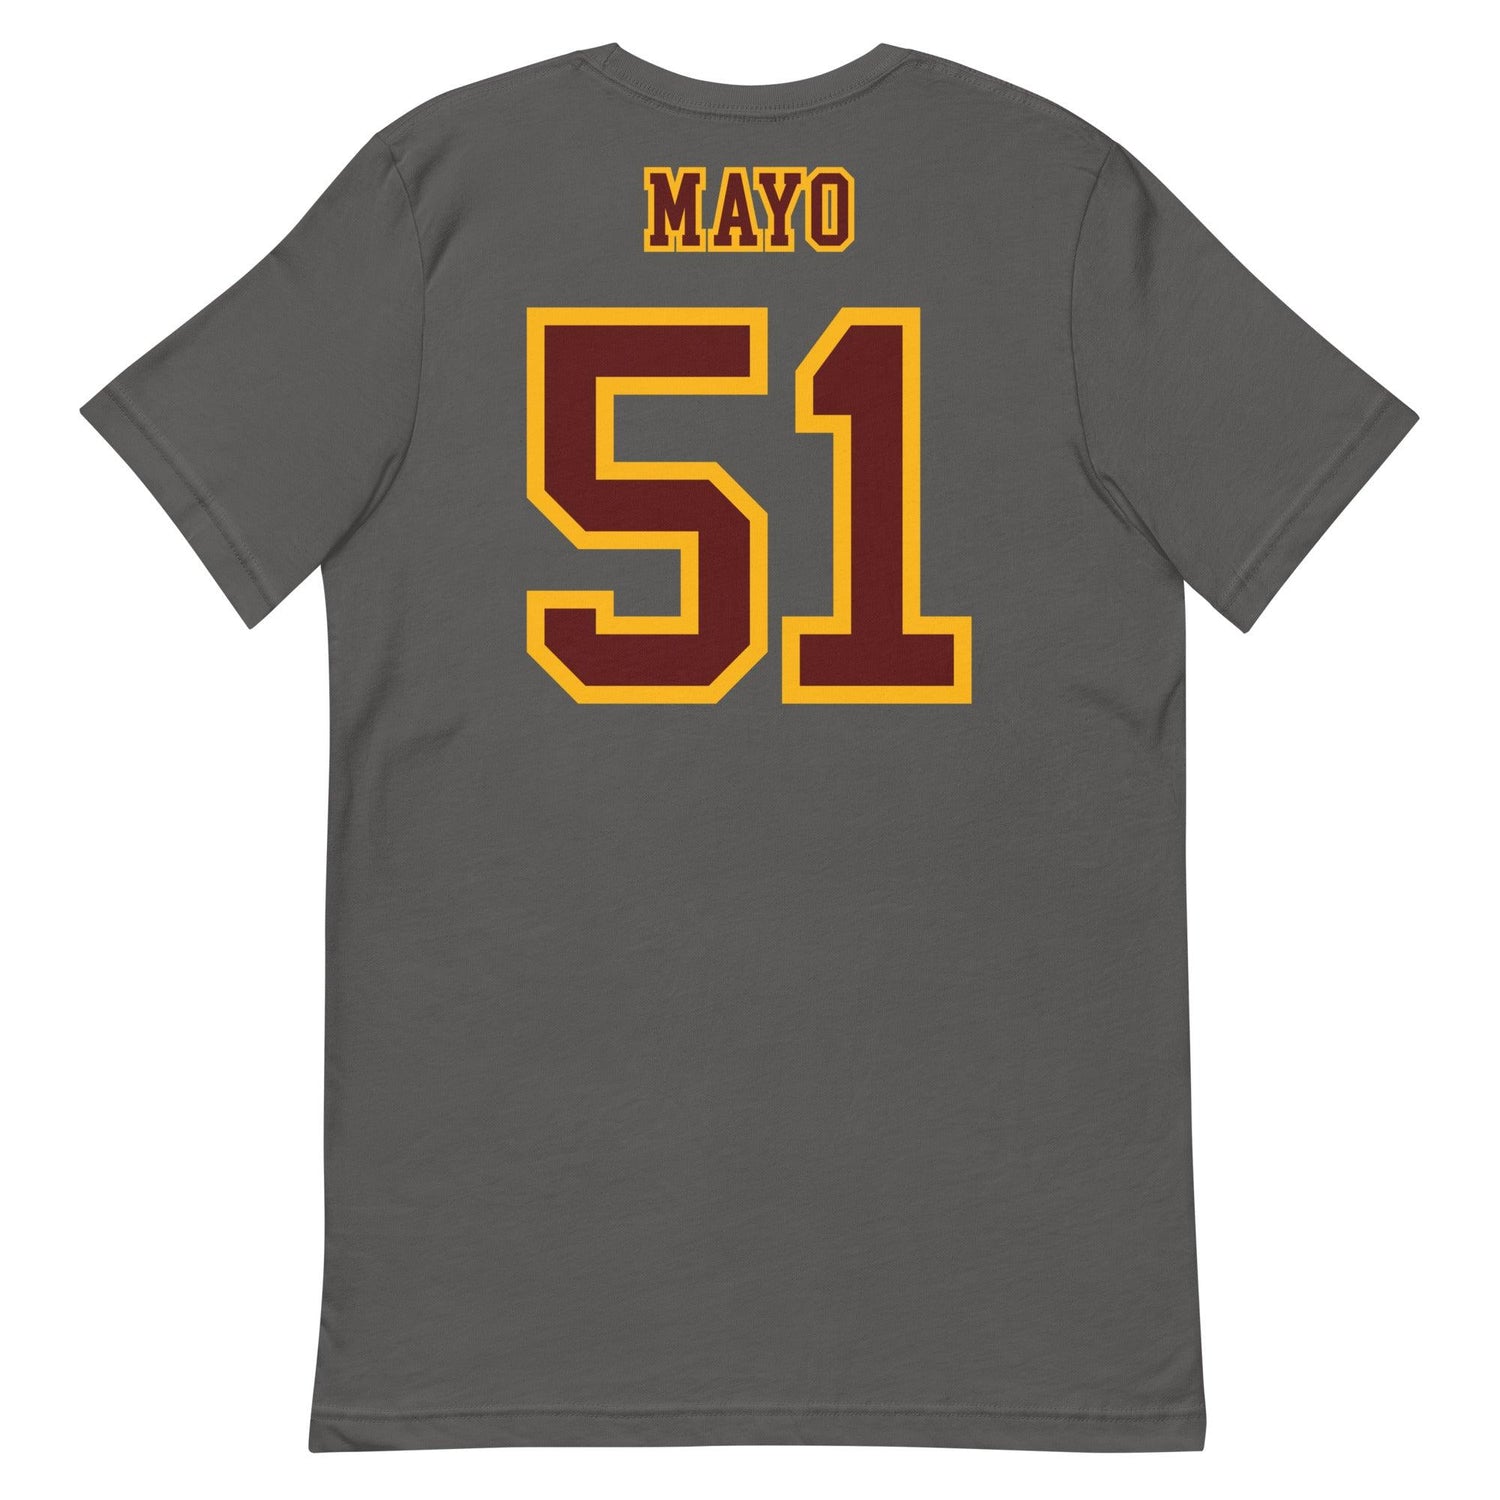 David Mayo "Jersey" t-shirt - Fan Arch